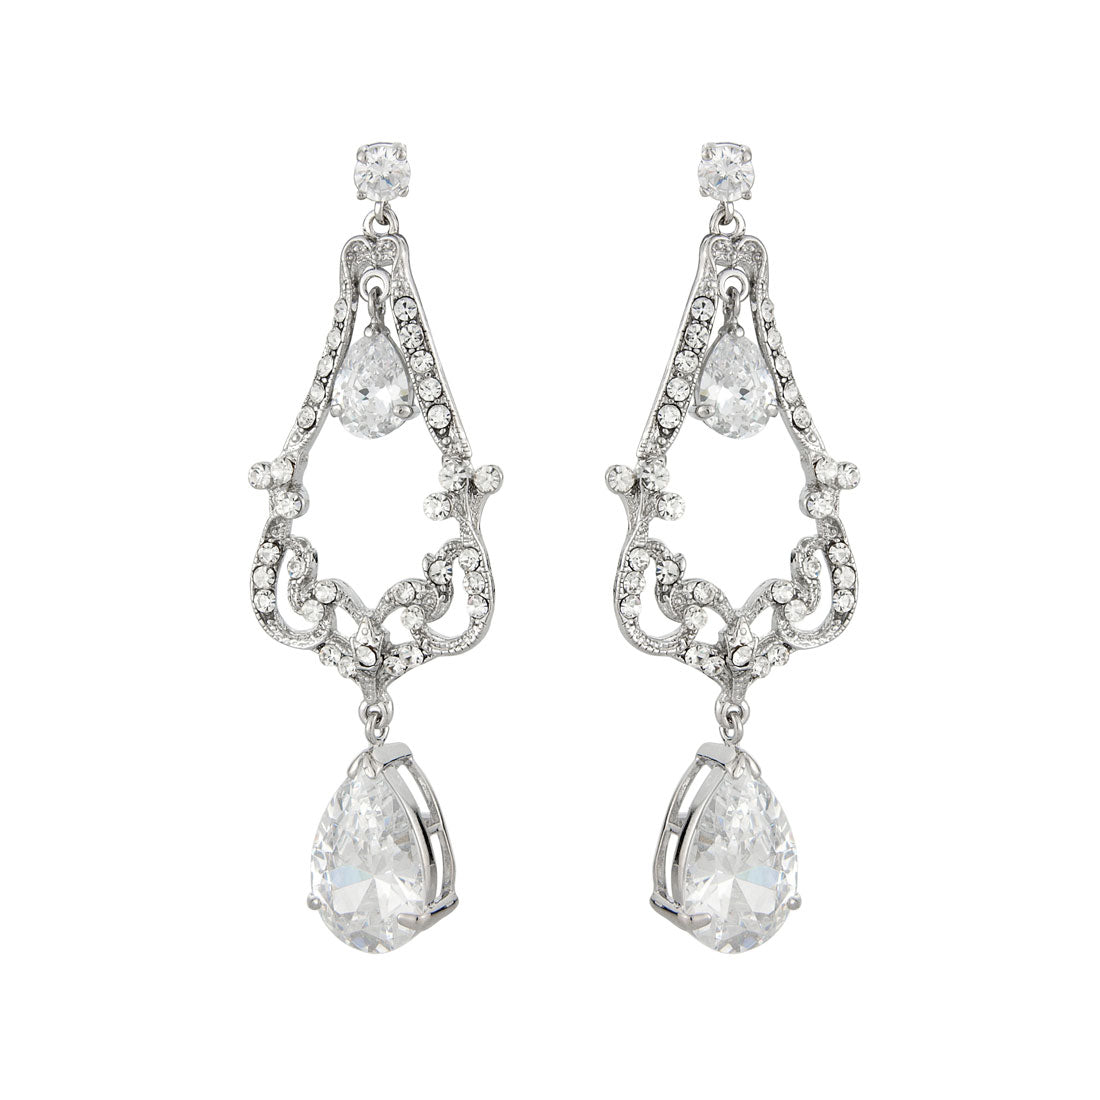 Extravagant Elegance Vintage Crystal Chandelier Earrings